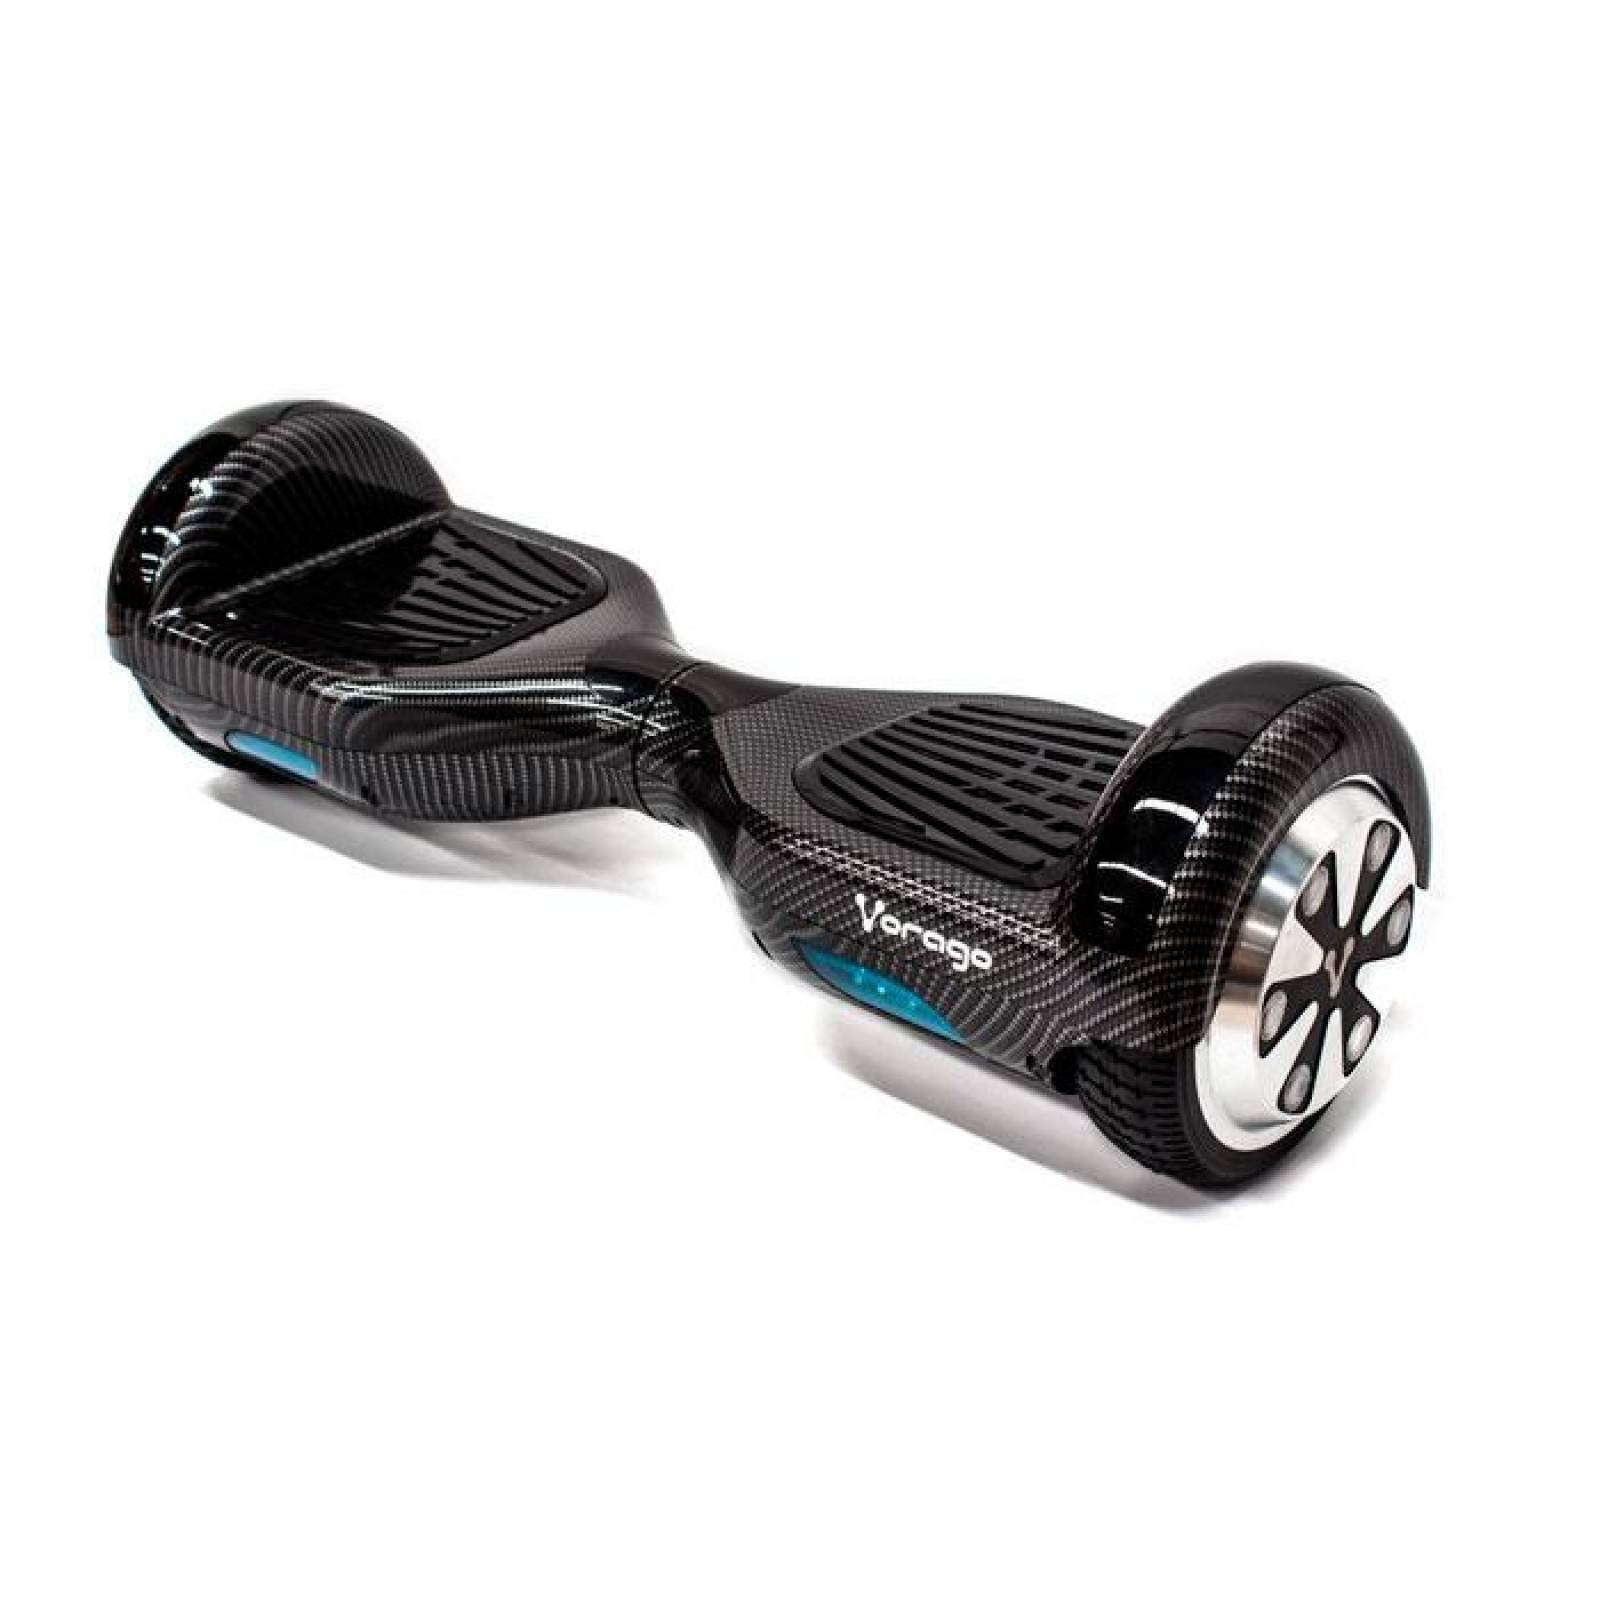 Skate eléctrico hoverboard Ninoto S-80 Negro/Blanco 16 cm